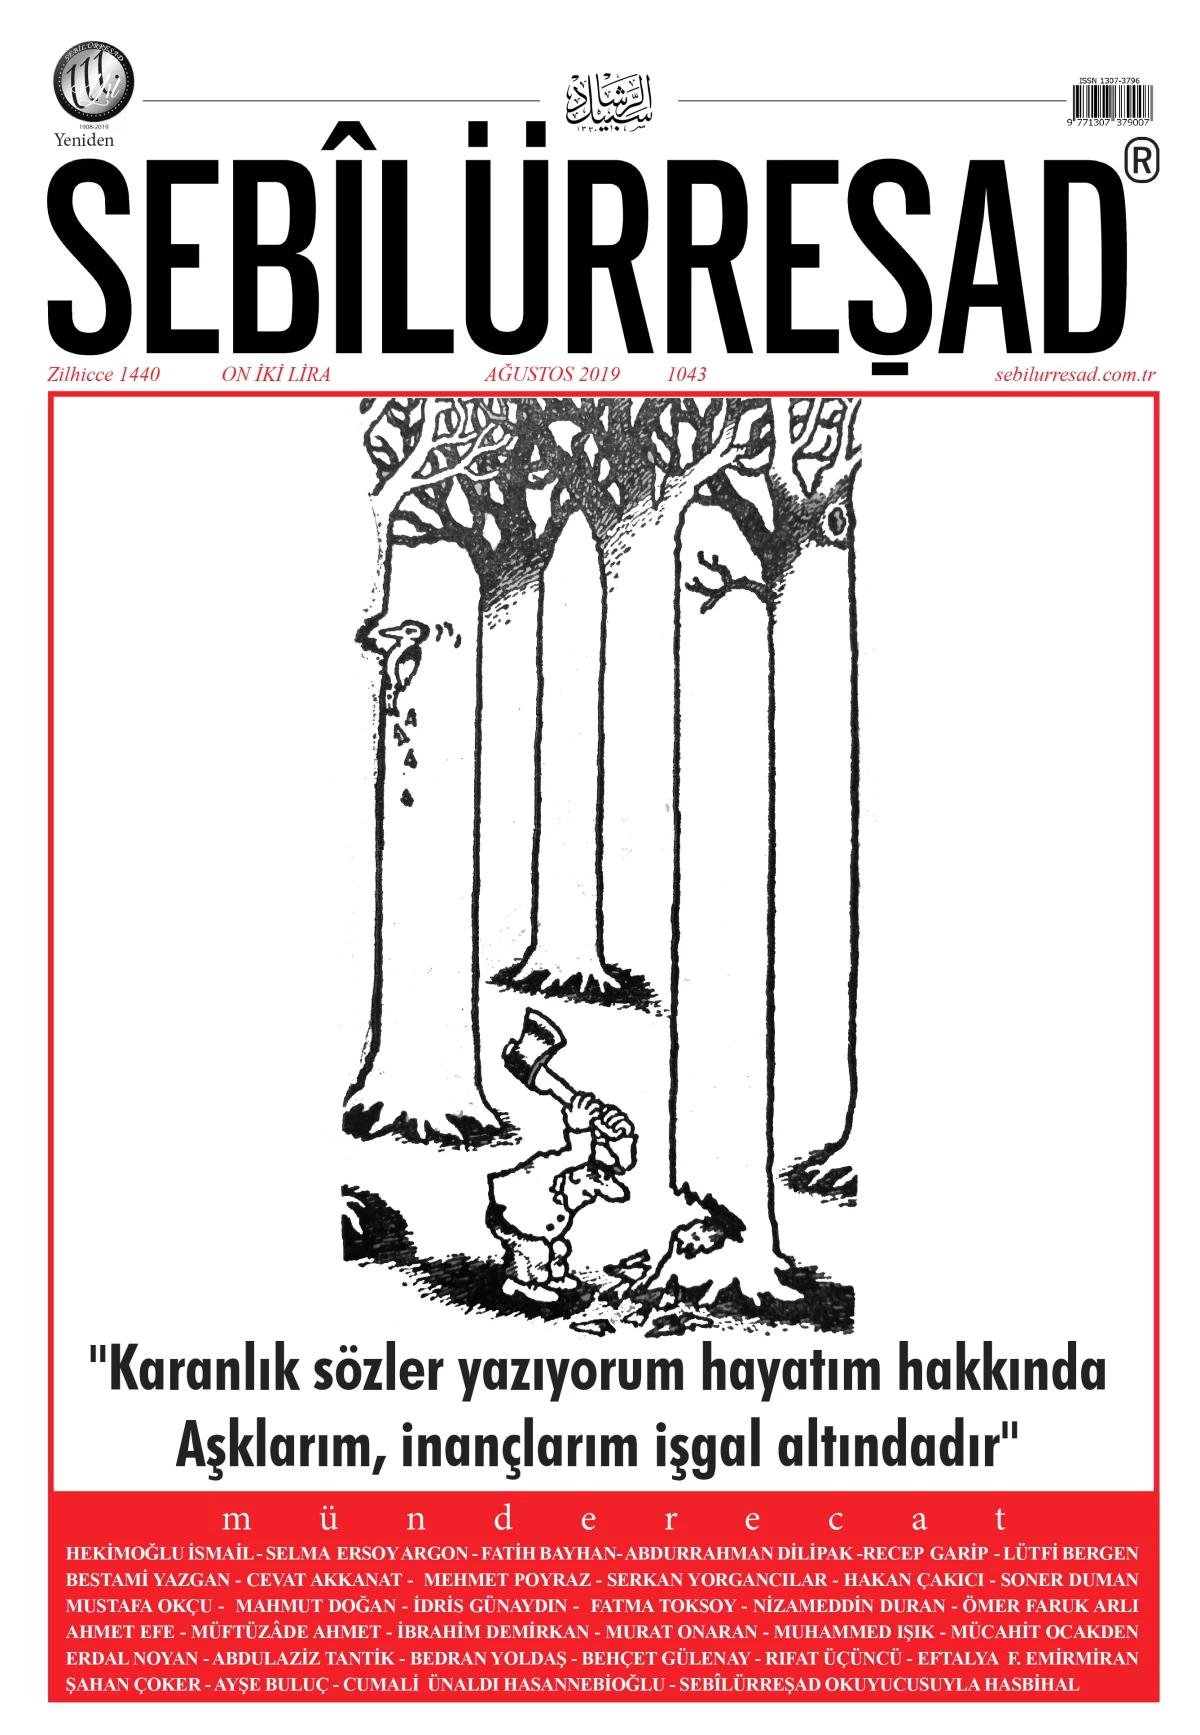 Millî Şairimiz Mehmet Âkif\'in dergisi Sebilürreşad 111 yaşında